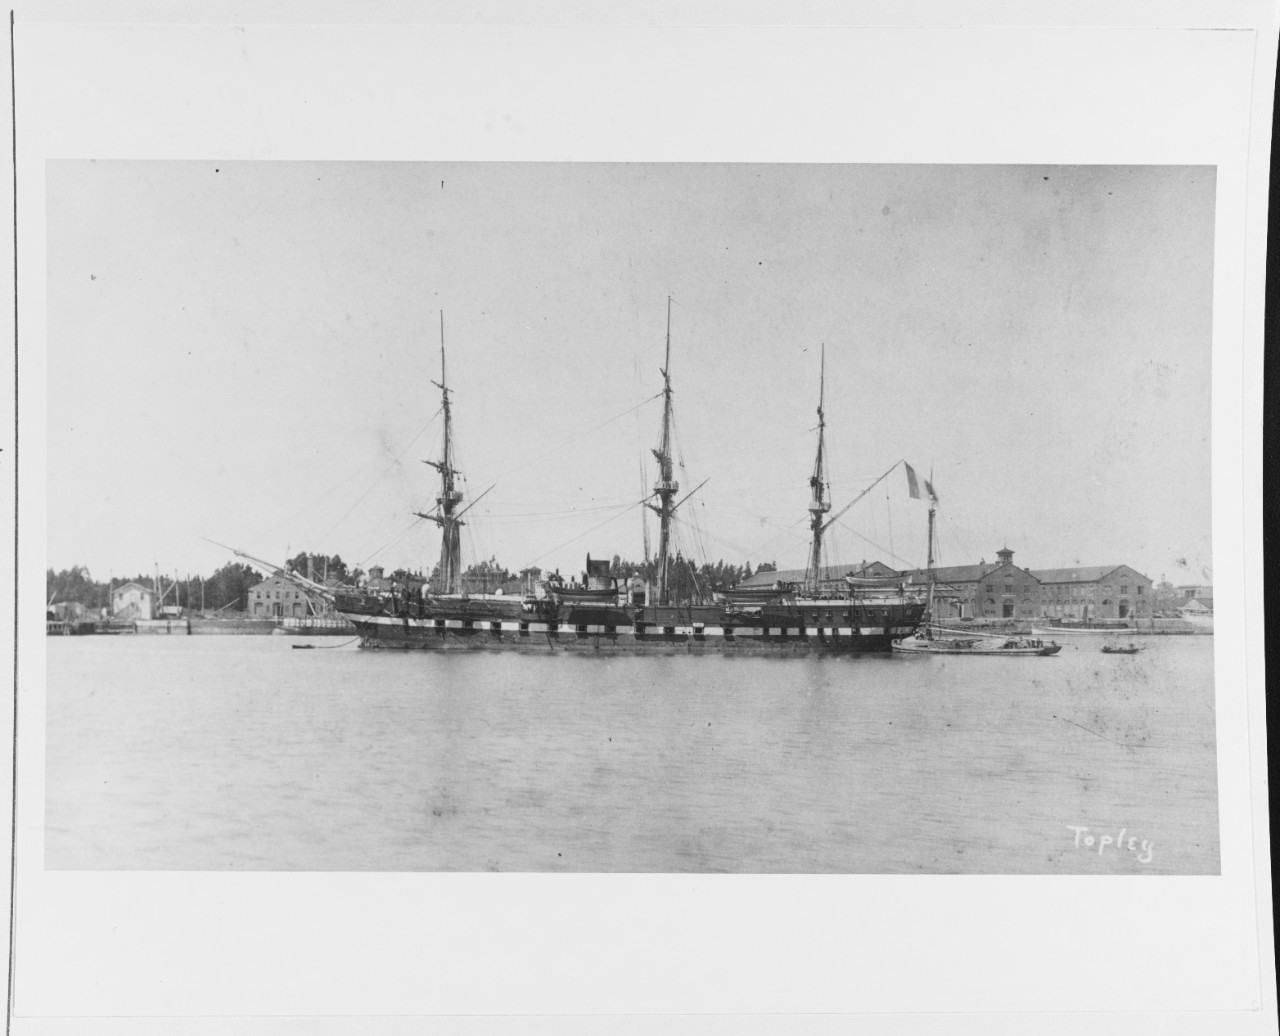 DUBOURDIEU (French cruiser, 1884)